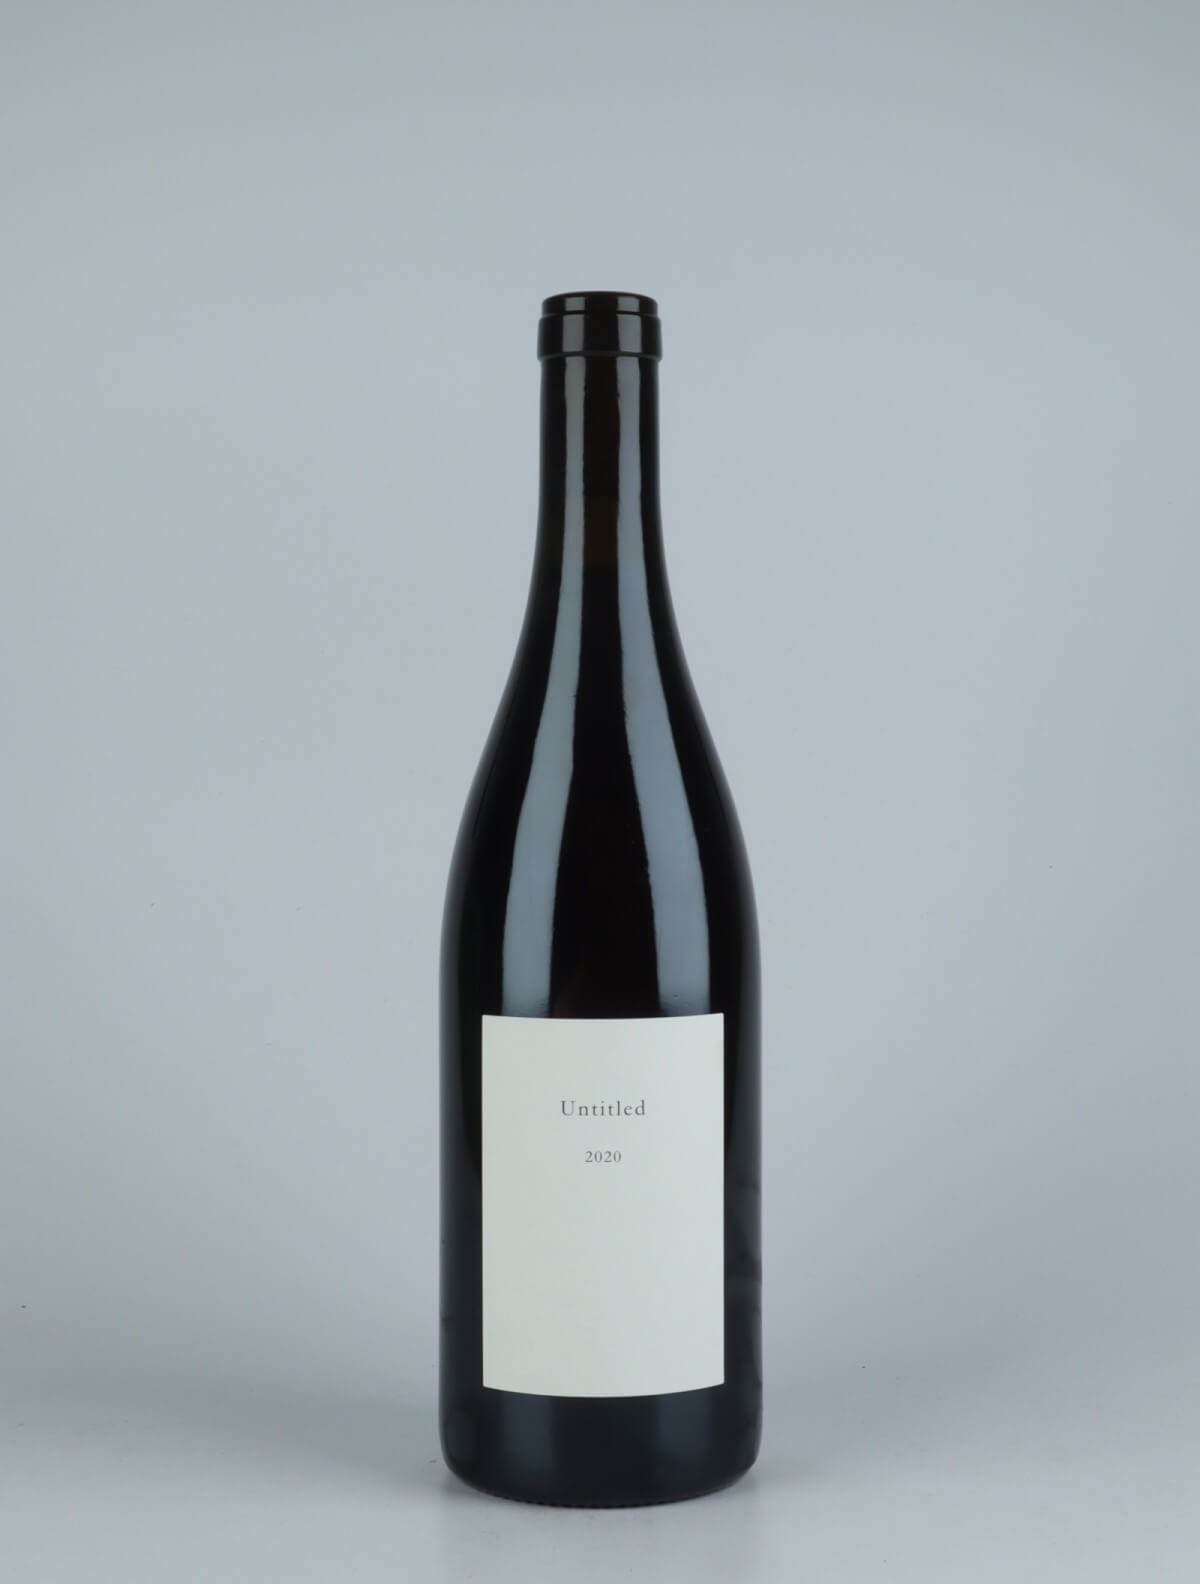 En flaske 2020 Untitled Rødvin fra Les Frères Soulier, Rhône i Frankrig